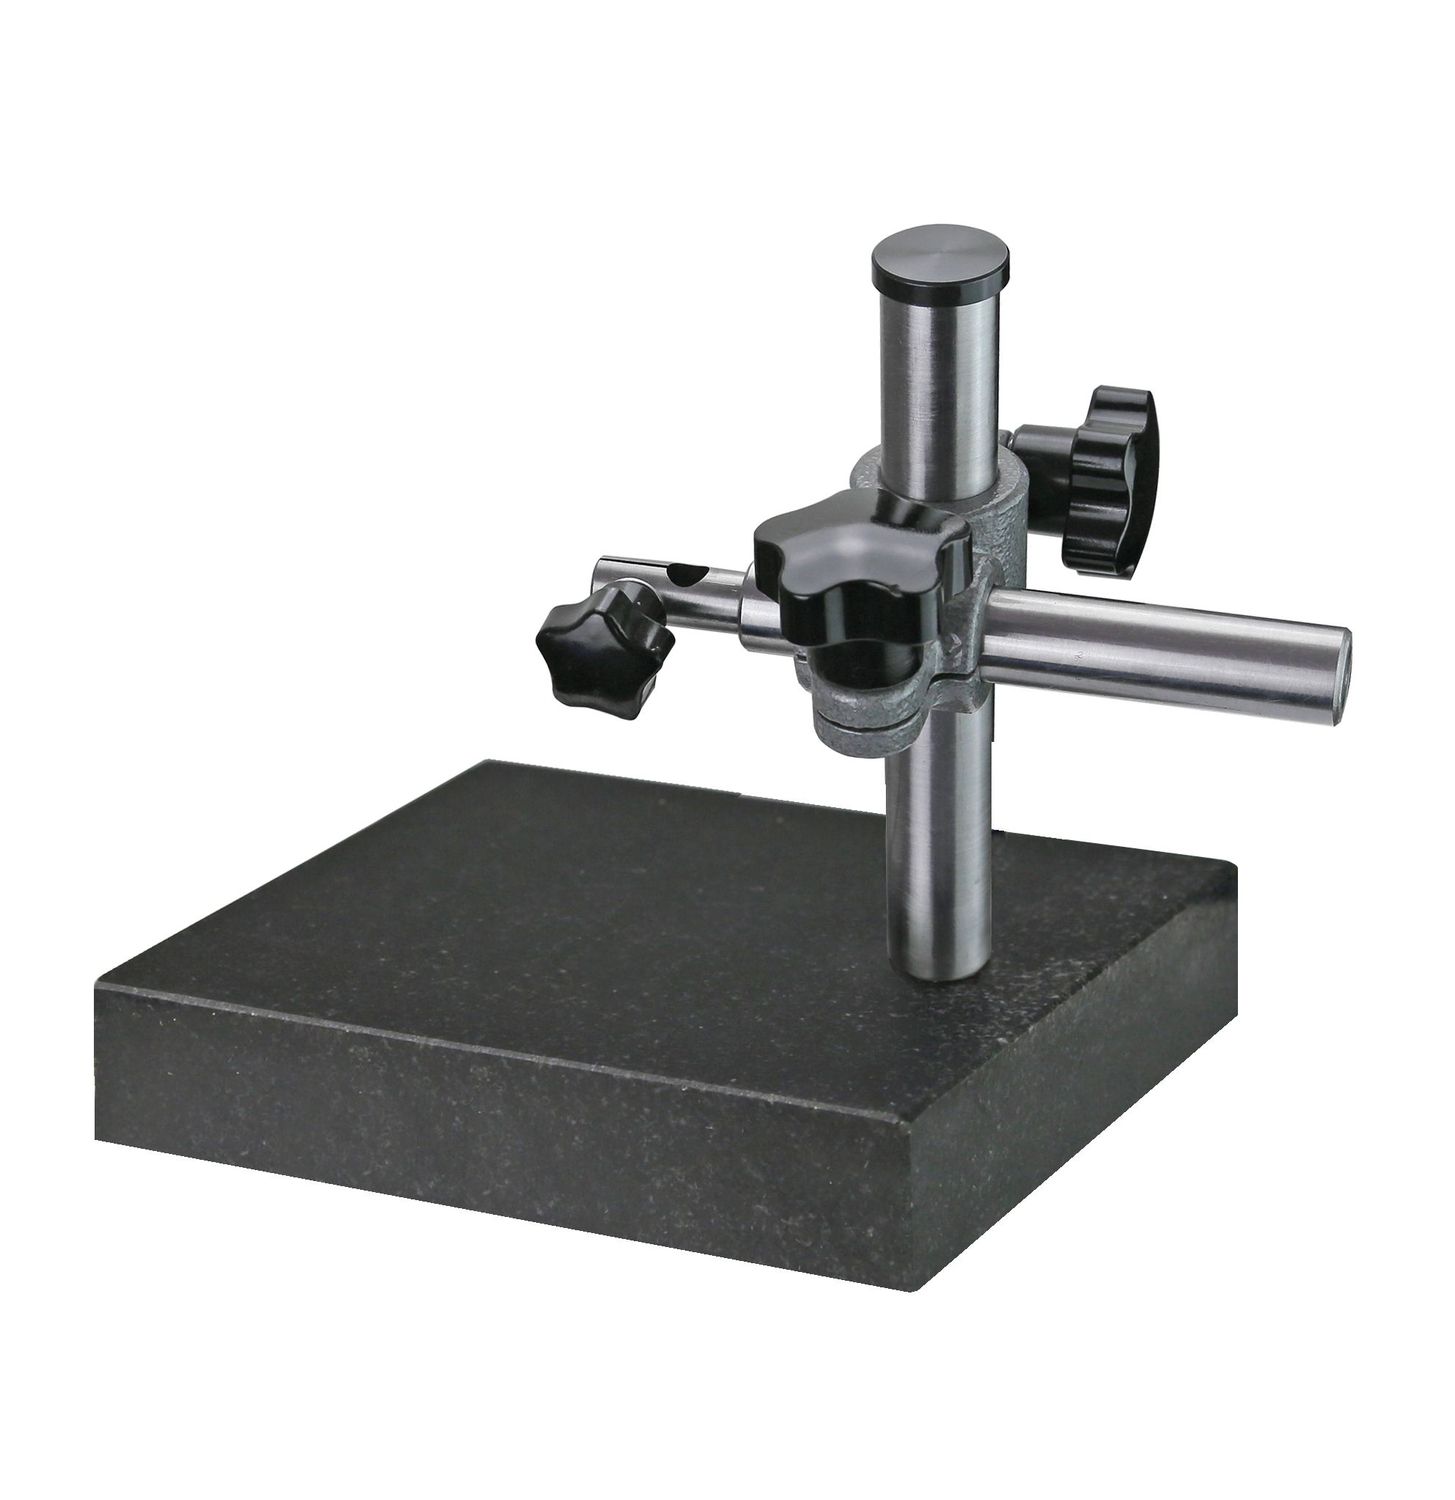 Präzisions-Messtisch 200 x 150 mm mit Messuhrsäule u. Granitplatte